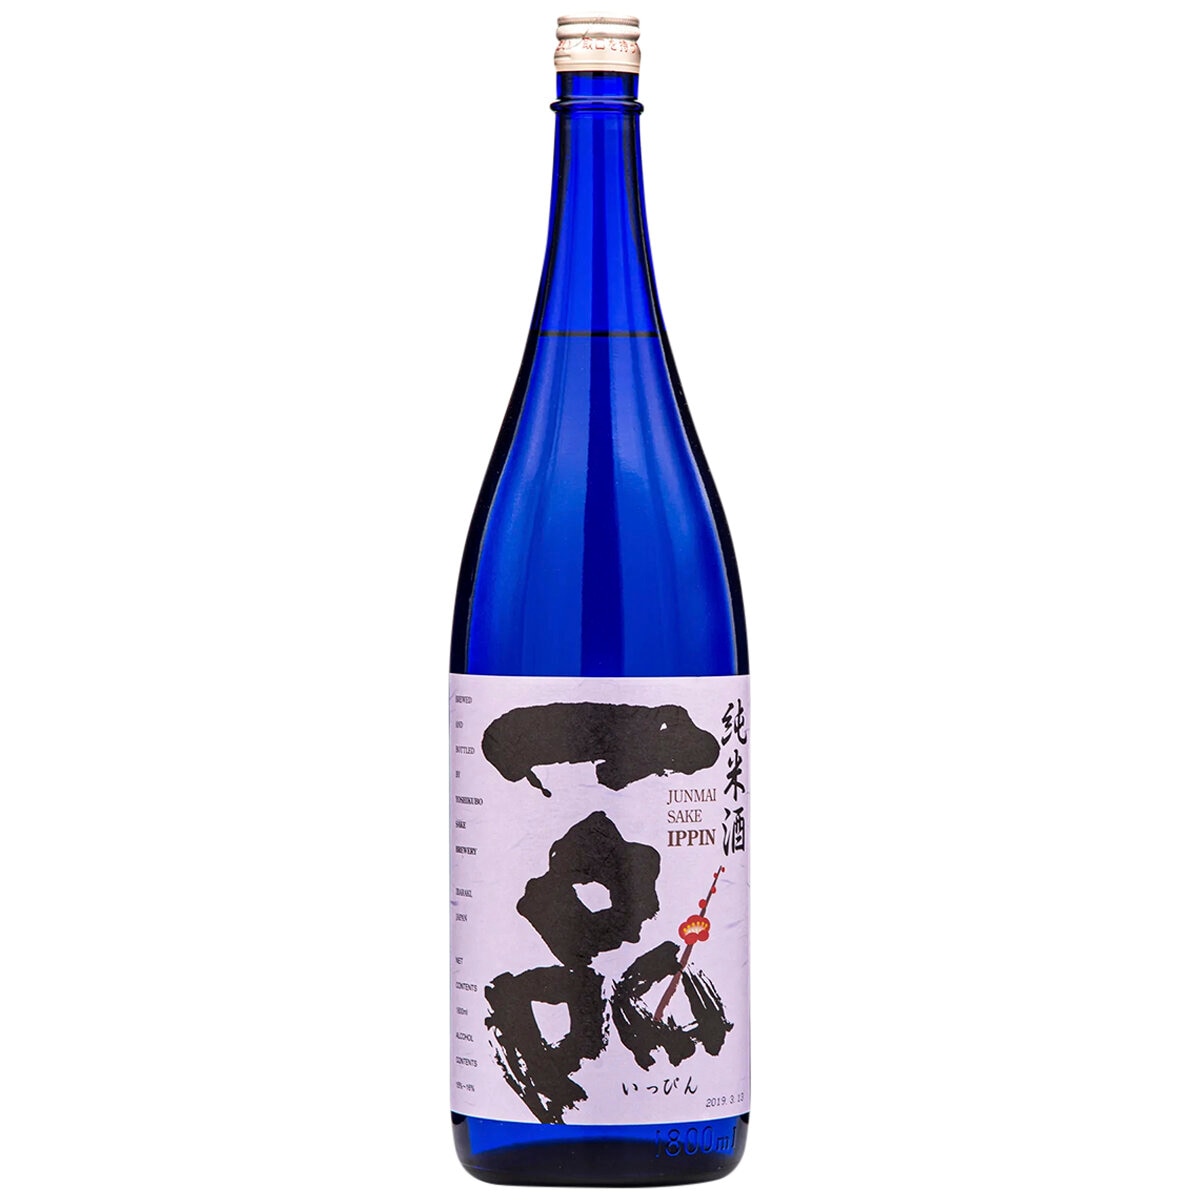 Ippin Junmai Premium Sake 1.8L